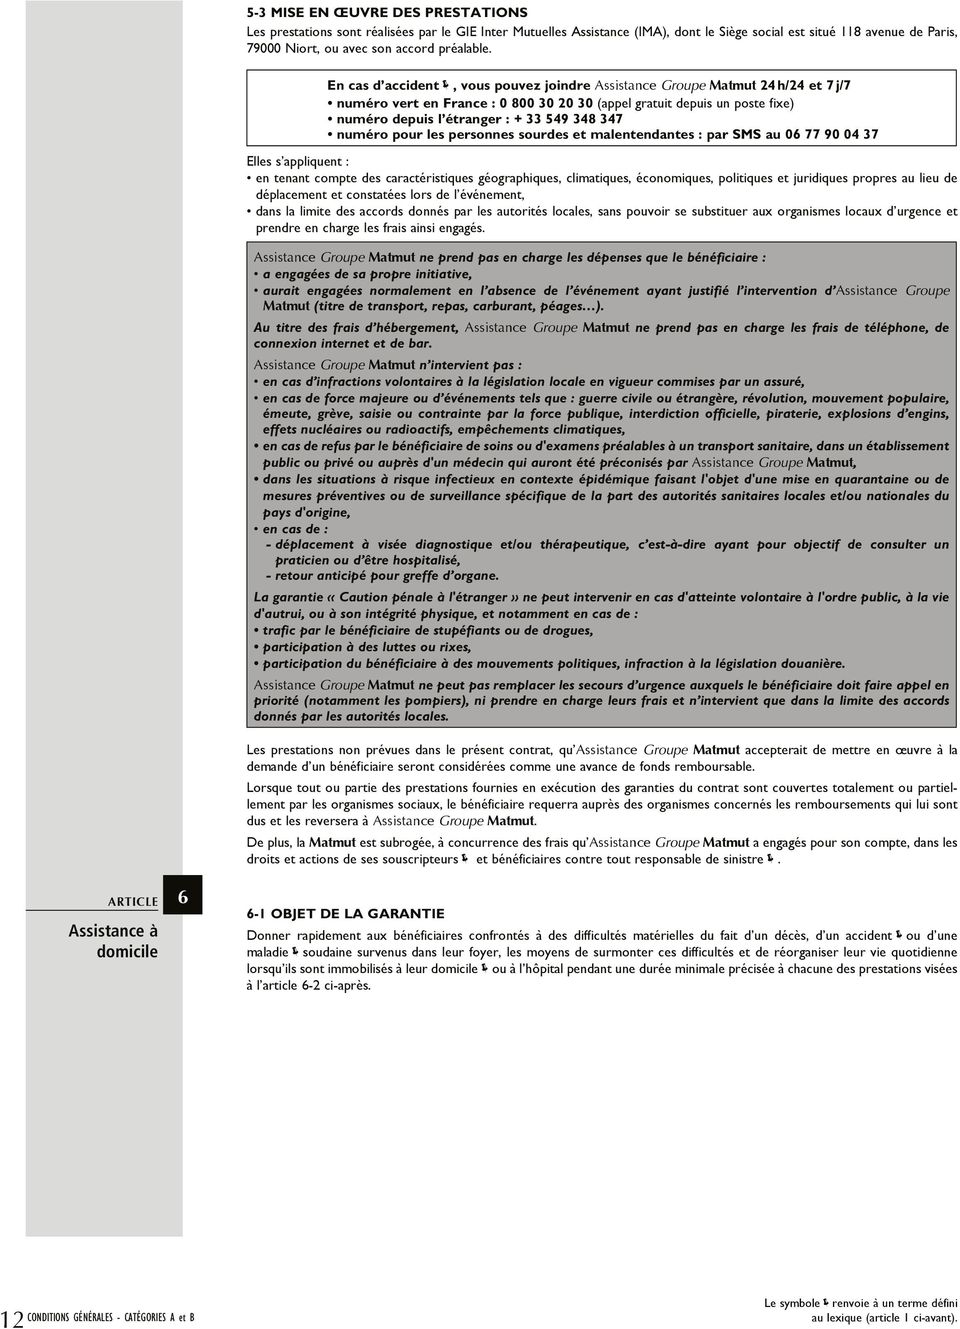 ARTICLE Assistance à domicile 6 En cas d accident, vous pouvez joindre Assistance Groupe Matmut 24 h/24 et 7 j/7 numéro vert en France : 0 800 30 20 30 (appel gratuit depuis un poste fixe) numéro